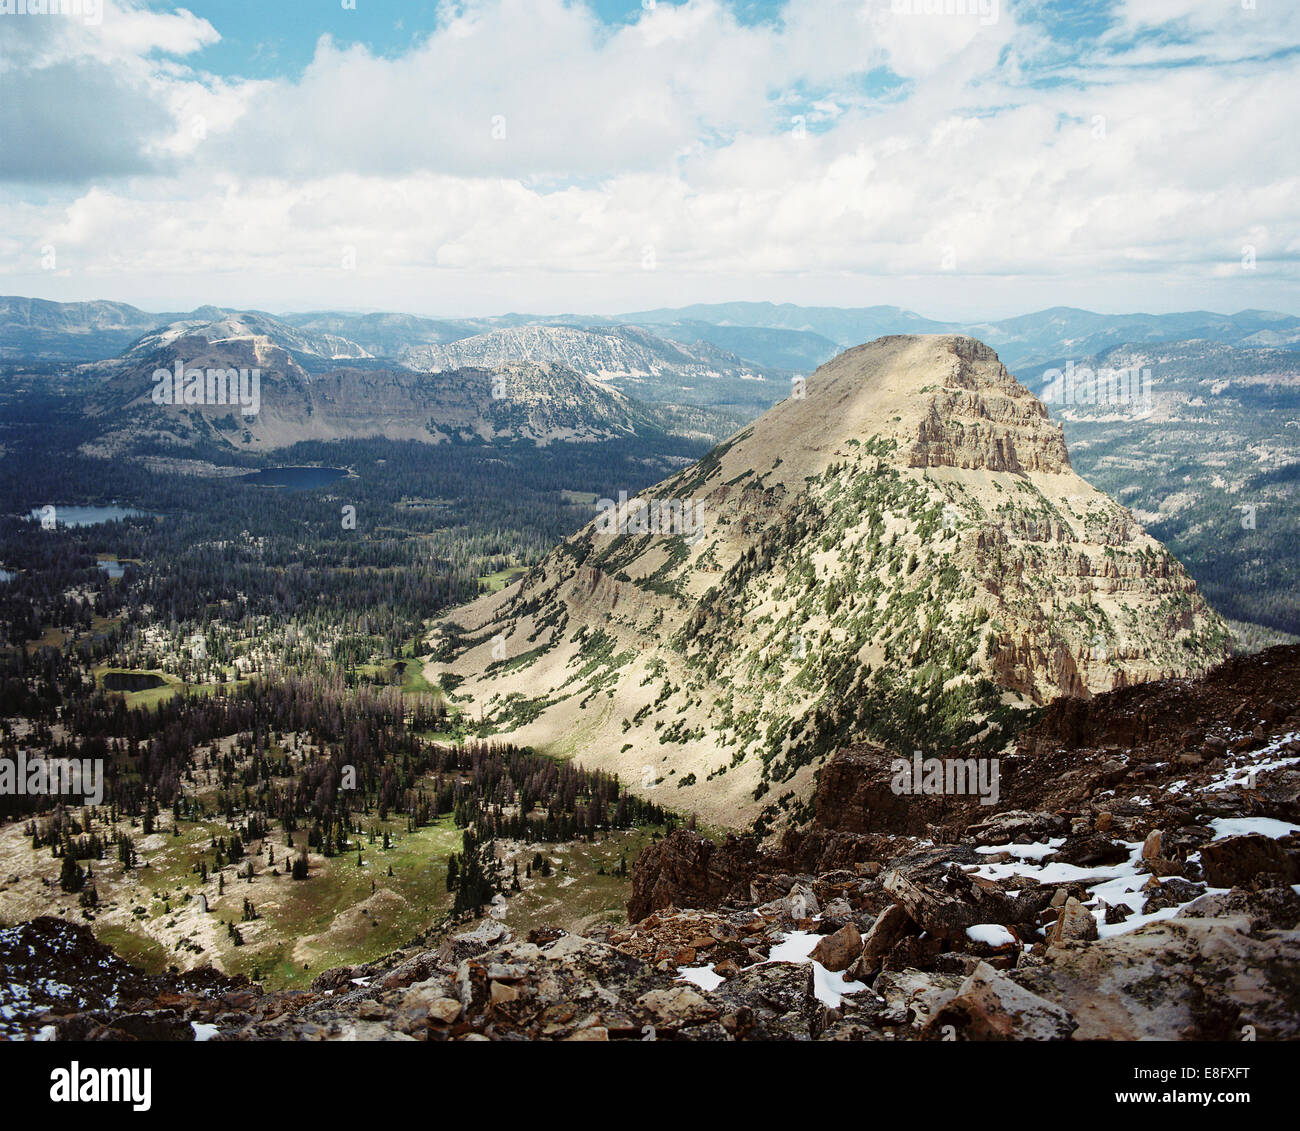 USA, Utah, vue aérienne des montagnes et les vallées de montagne chauve Banque D'Images